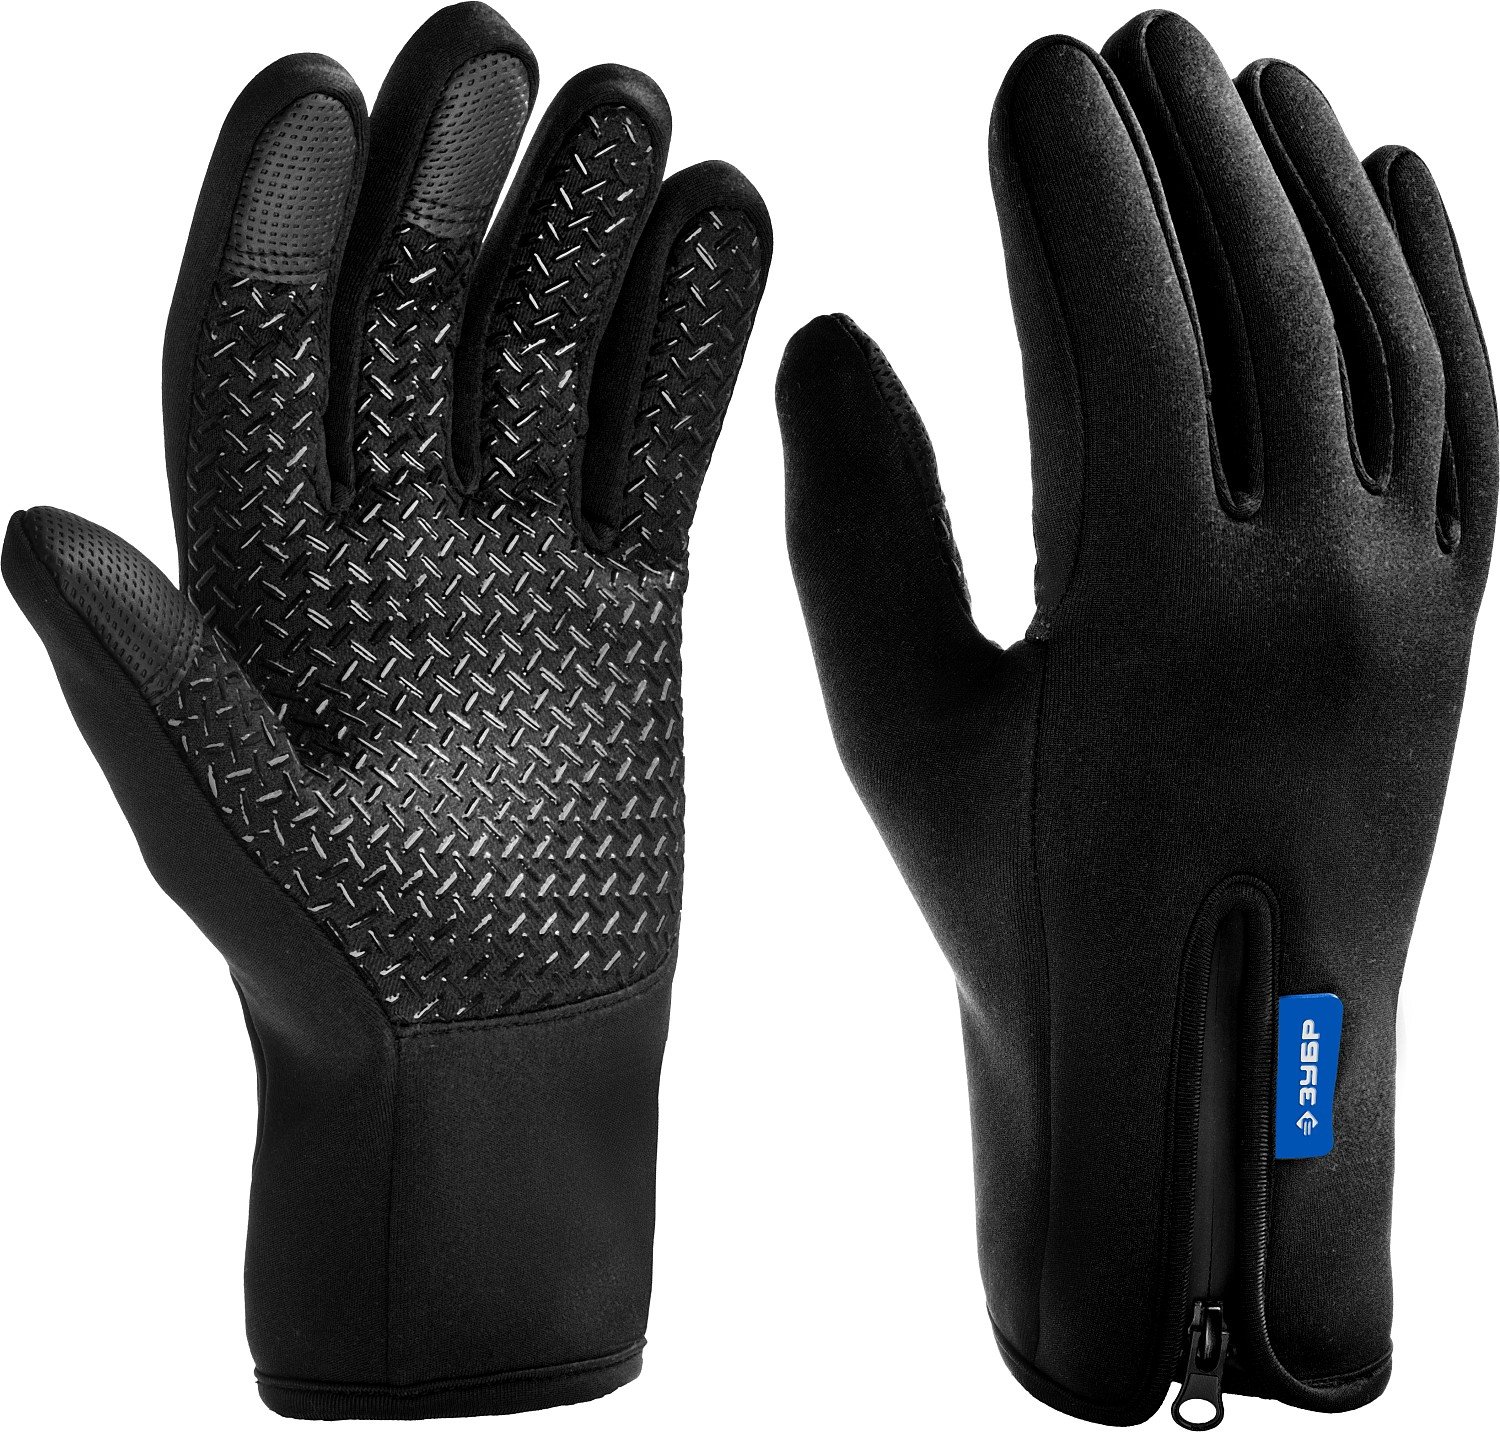 Утепленные ЗУБР Норд р. XL ветро-и влаго-защищенные перчатки (11460-XL)Купить